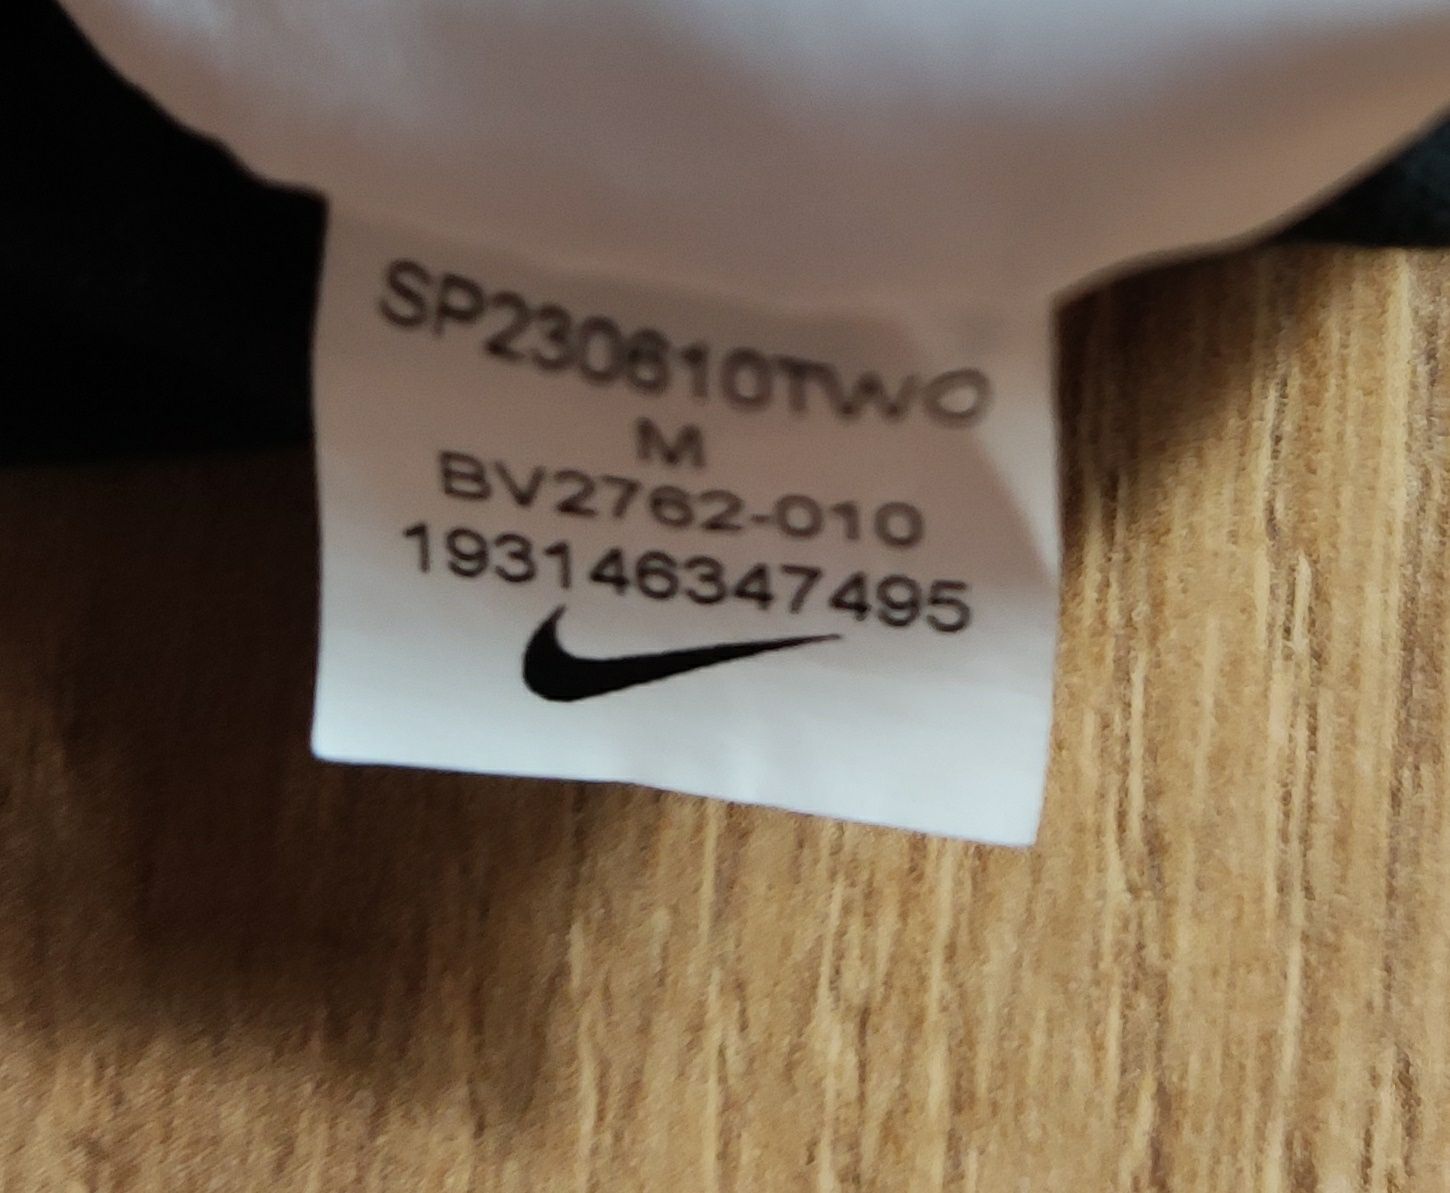 Nike męskie spodnie dresowe sportowe w rozmiarze M